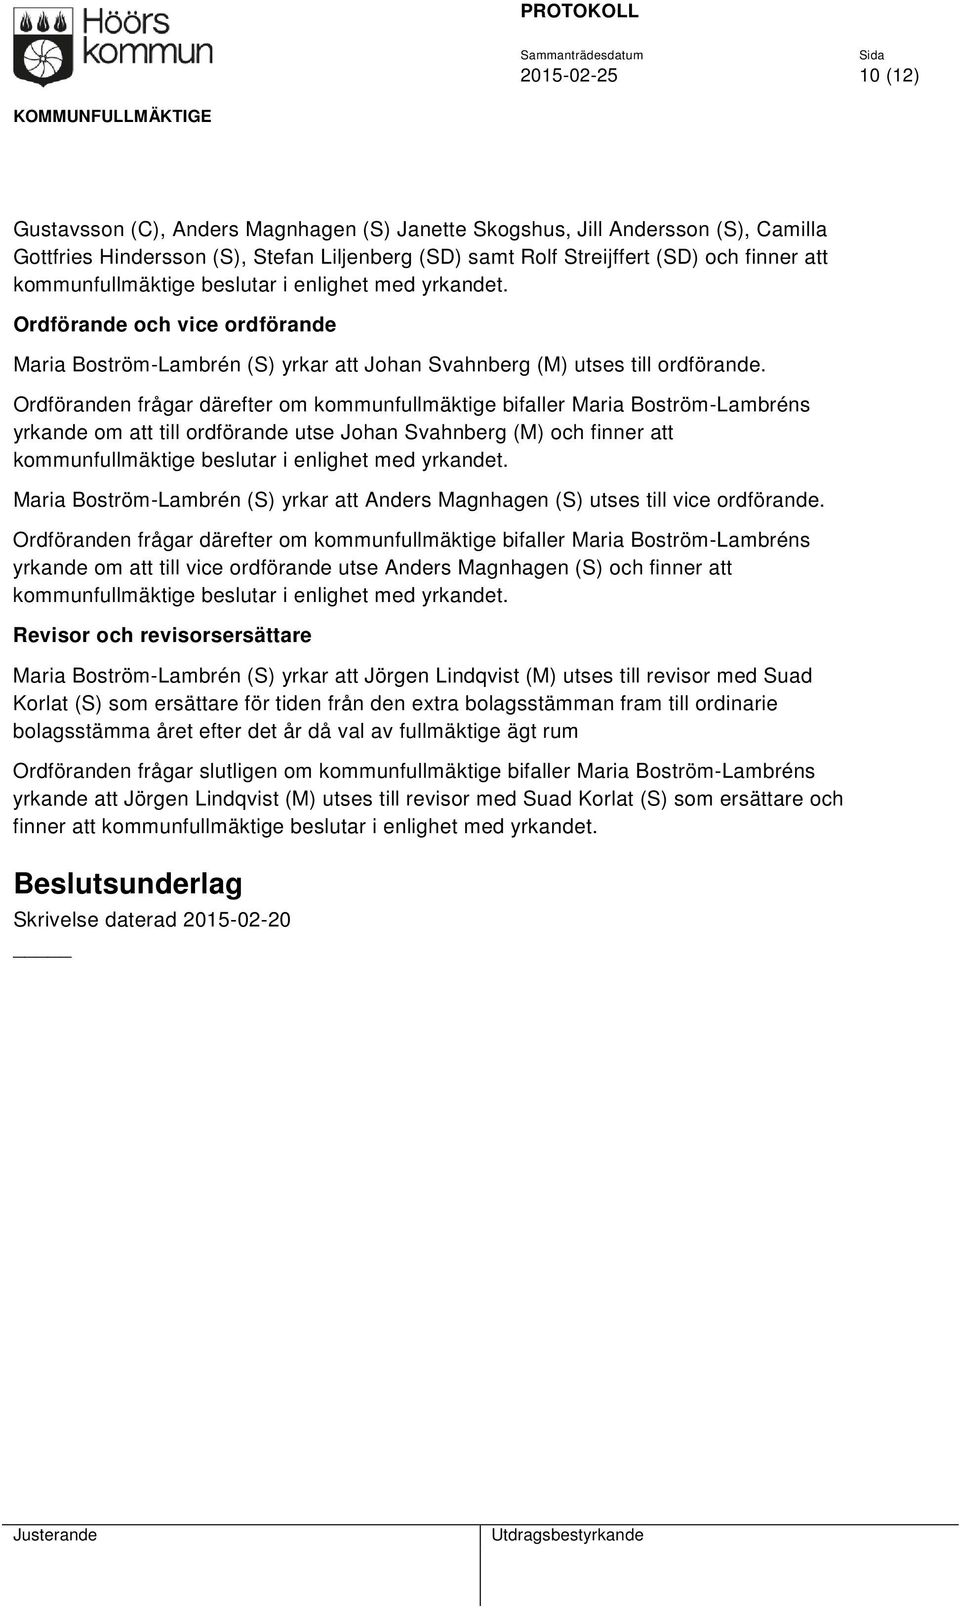 Ordföranden frågar därefter om kommunfullmäktige bifaller Maria Boström-Lambréns yrkande om att till ordförande utse Johan Svahnberg (M) och finner att kommunfullmäktige beslutar i enlighet med